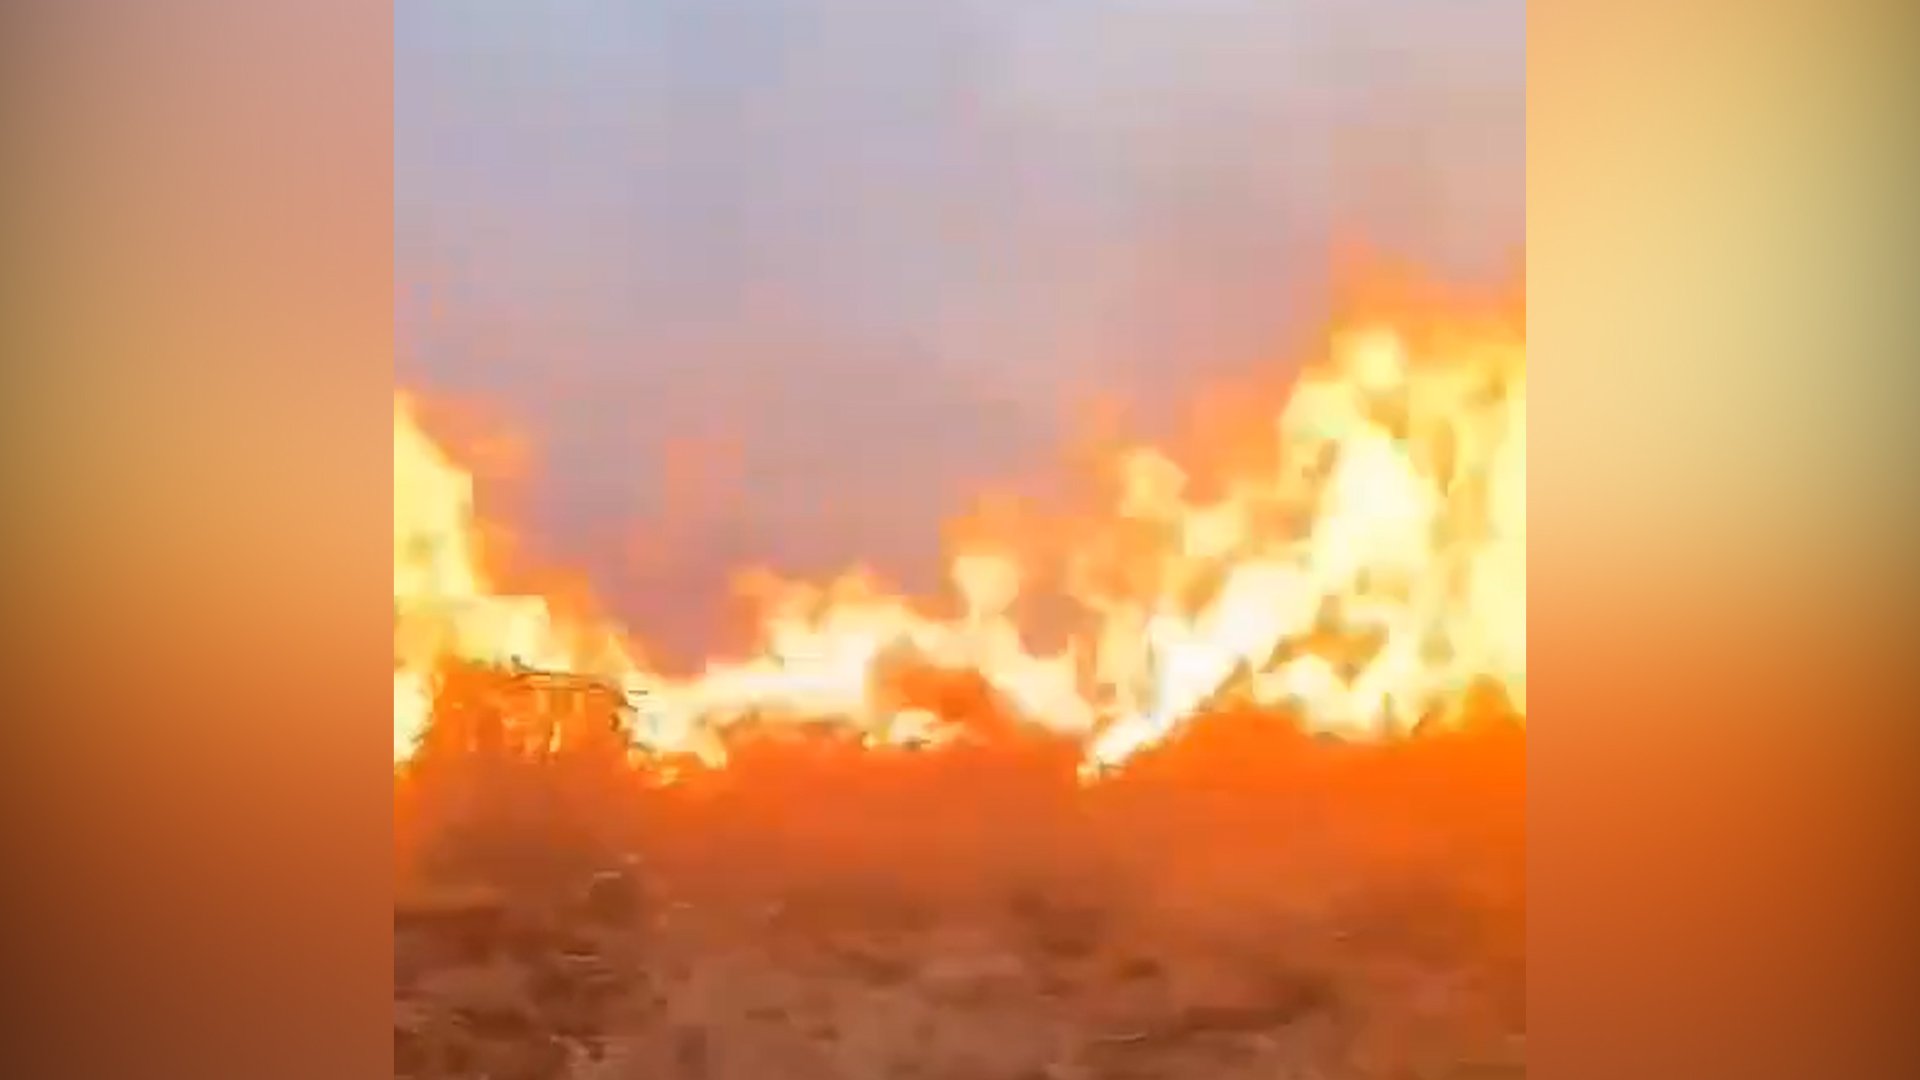 شاهد: النيران تلتهم 30 دونماً من الحنطة في الخالص.. سلك كهربائي أحرق المحصول